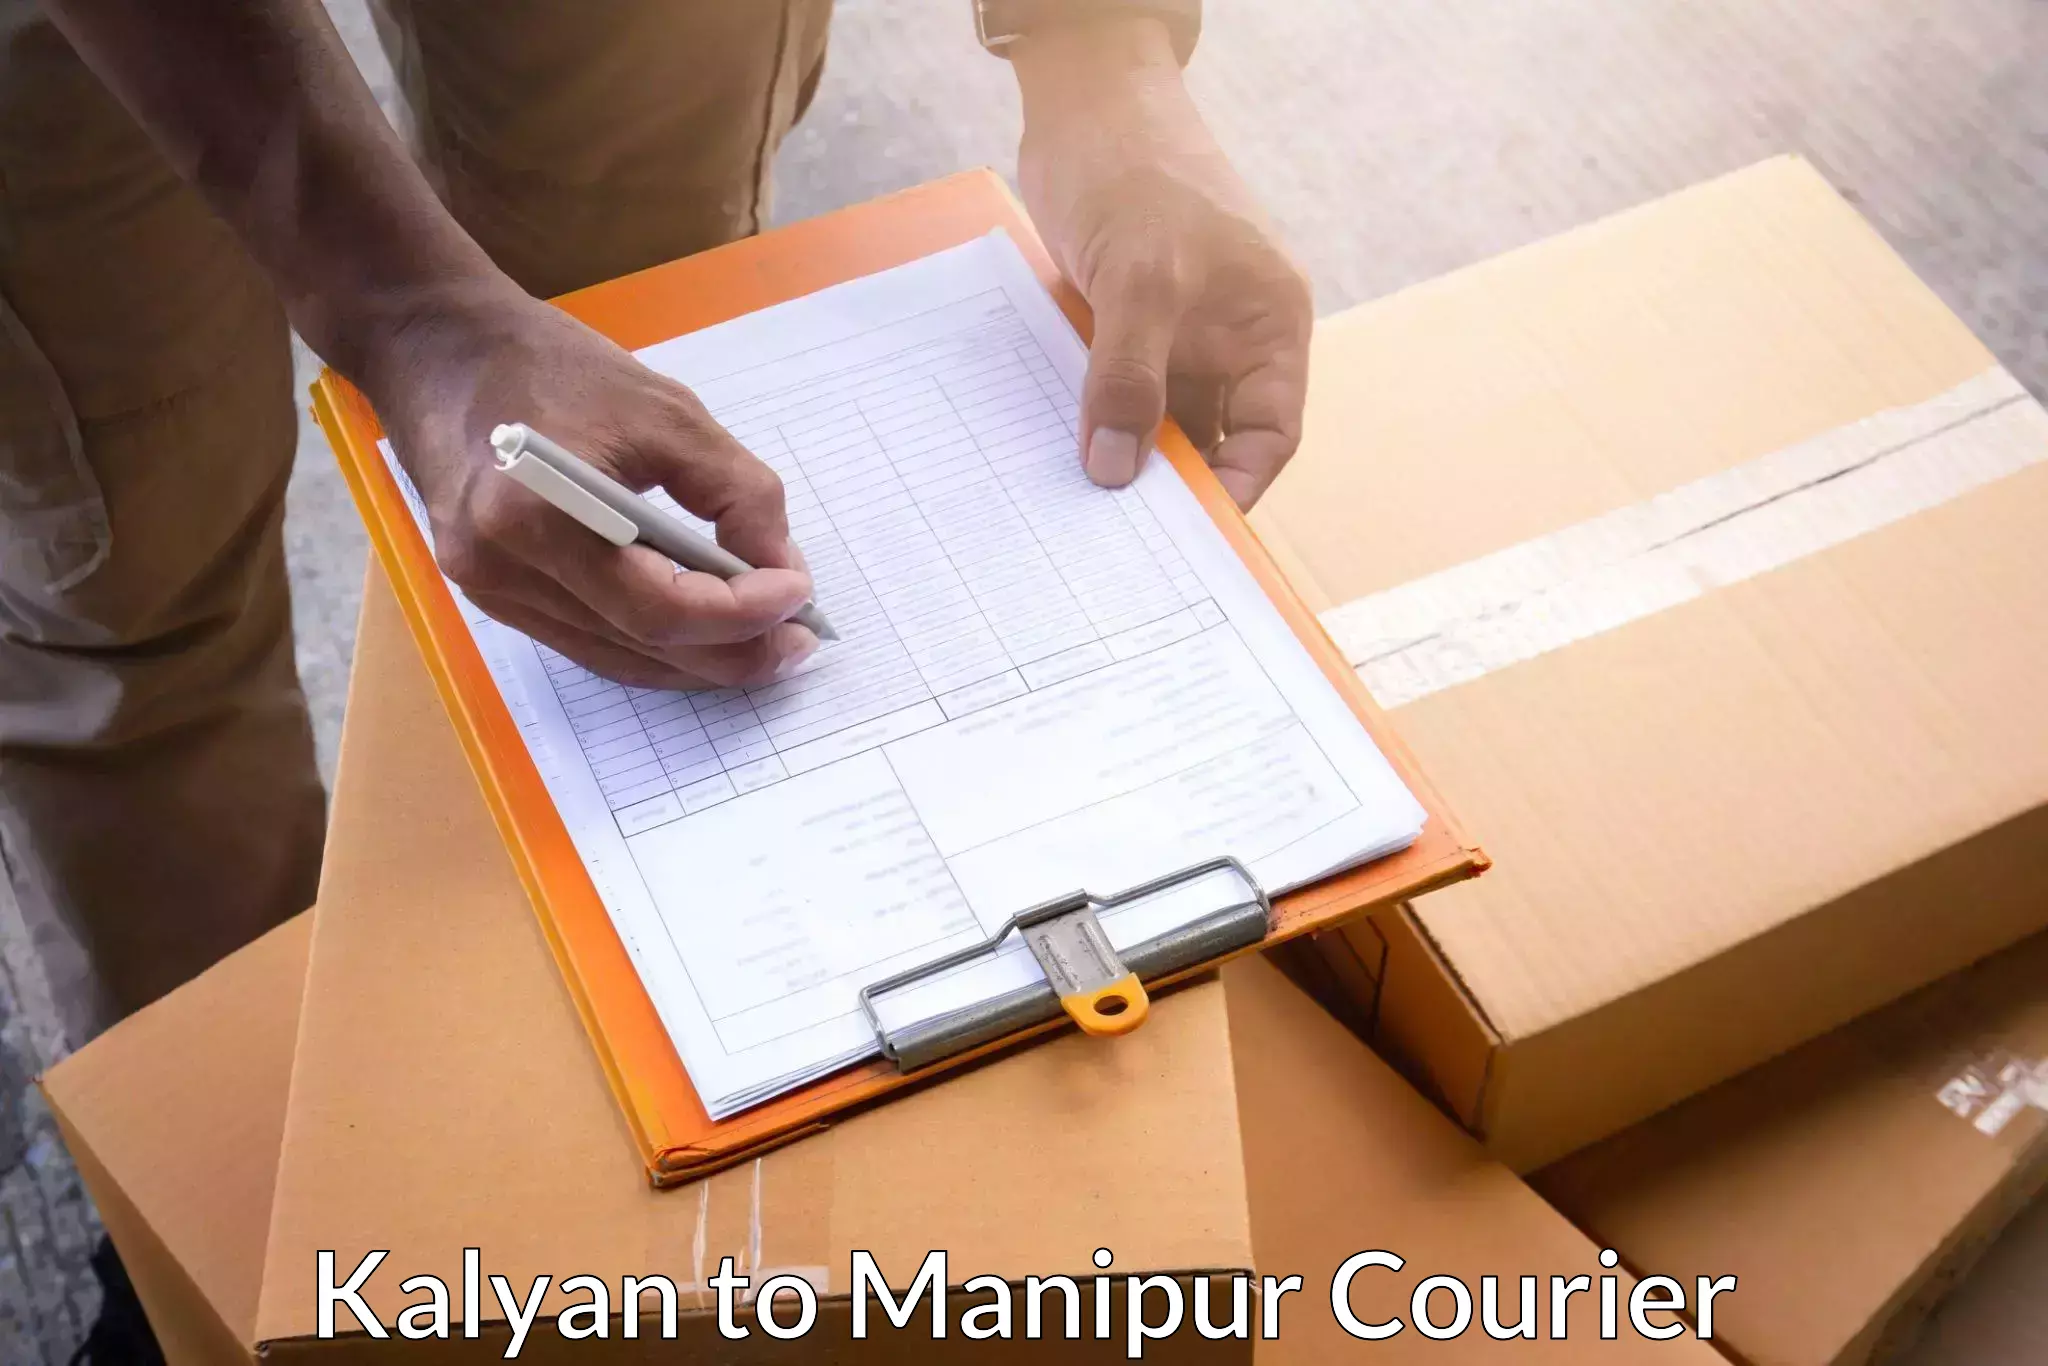 24/7 shipping services Kalyan to Moirang